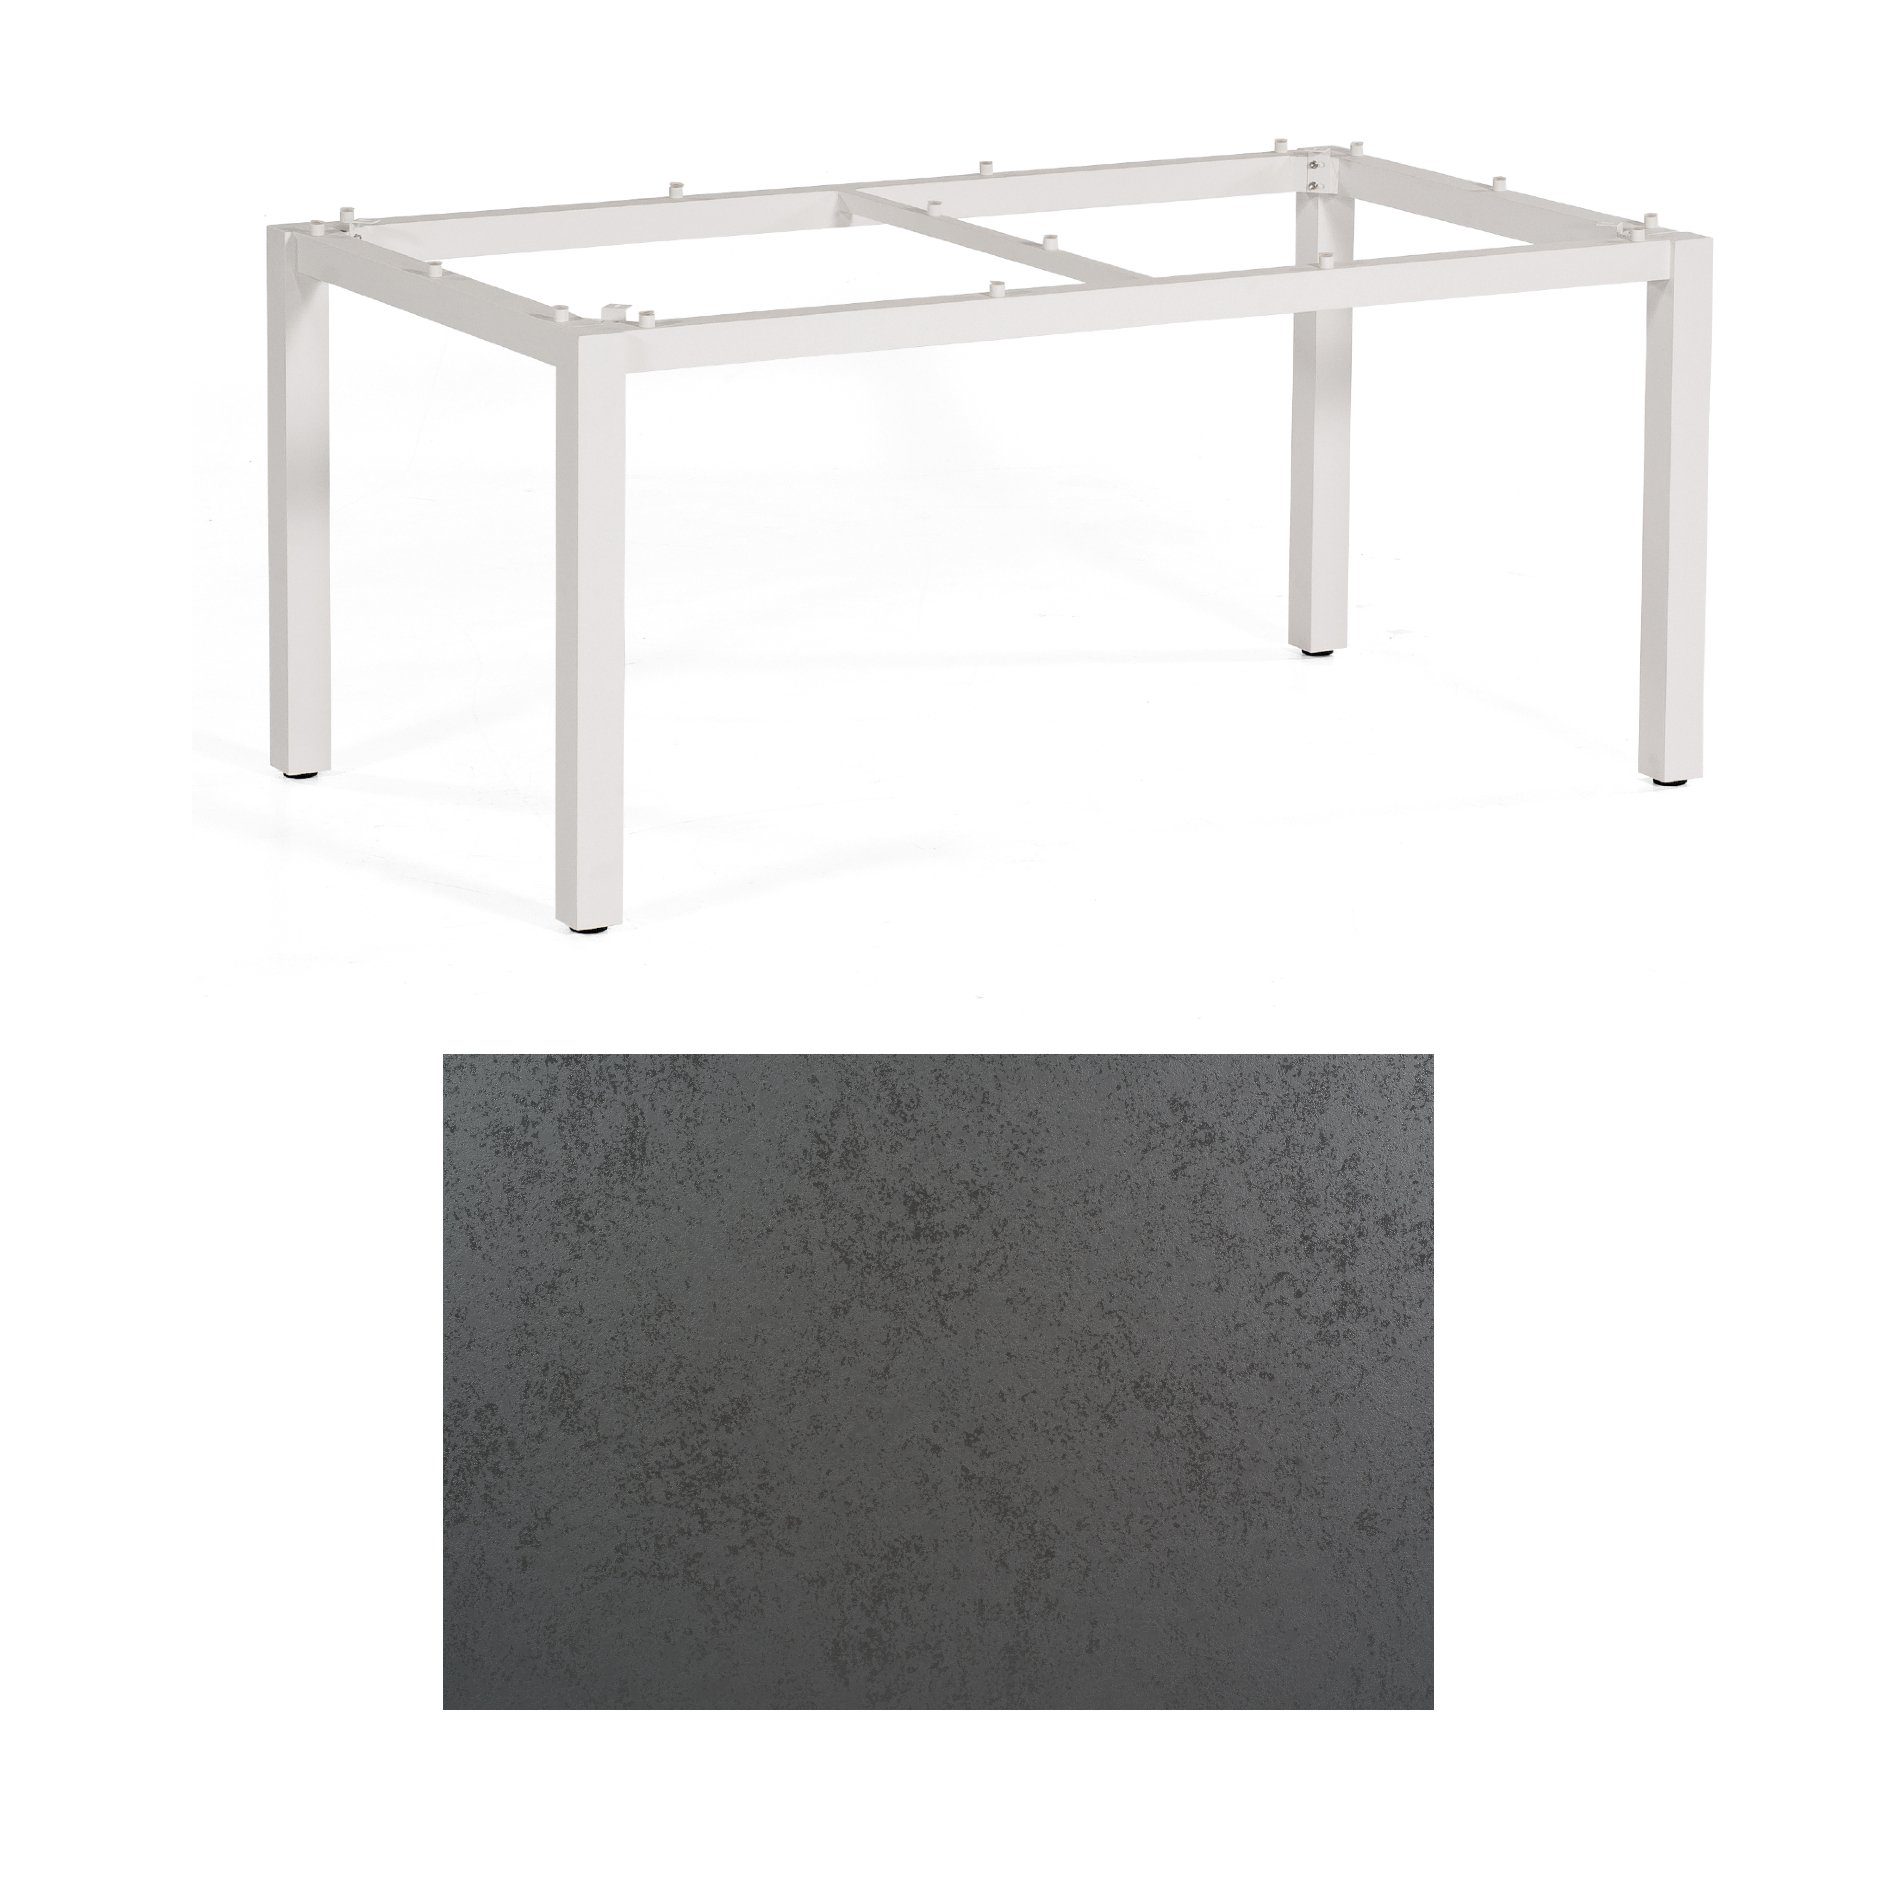 SonnenPartner Tisch „Base“, Gestell Aluminium weiß, Tischplatte HPL Struktura anthrazit, 160x90 cm